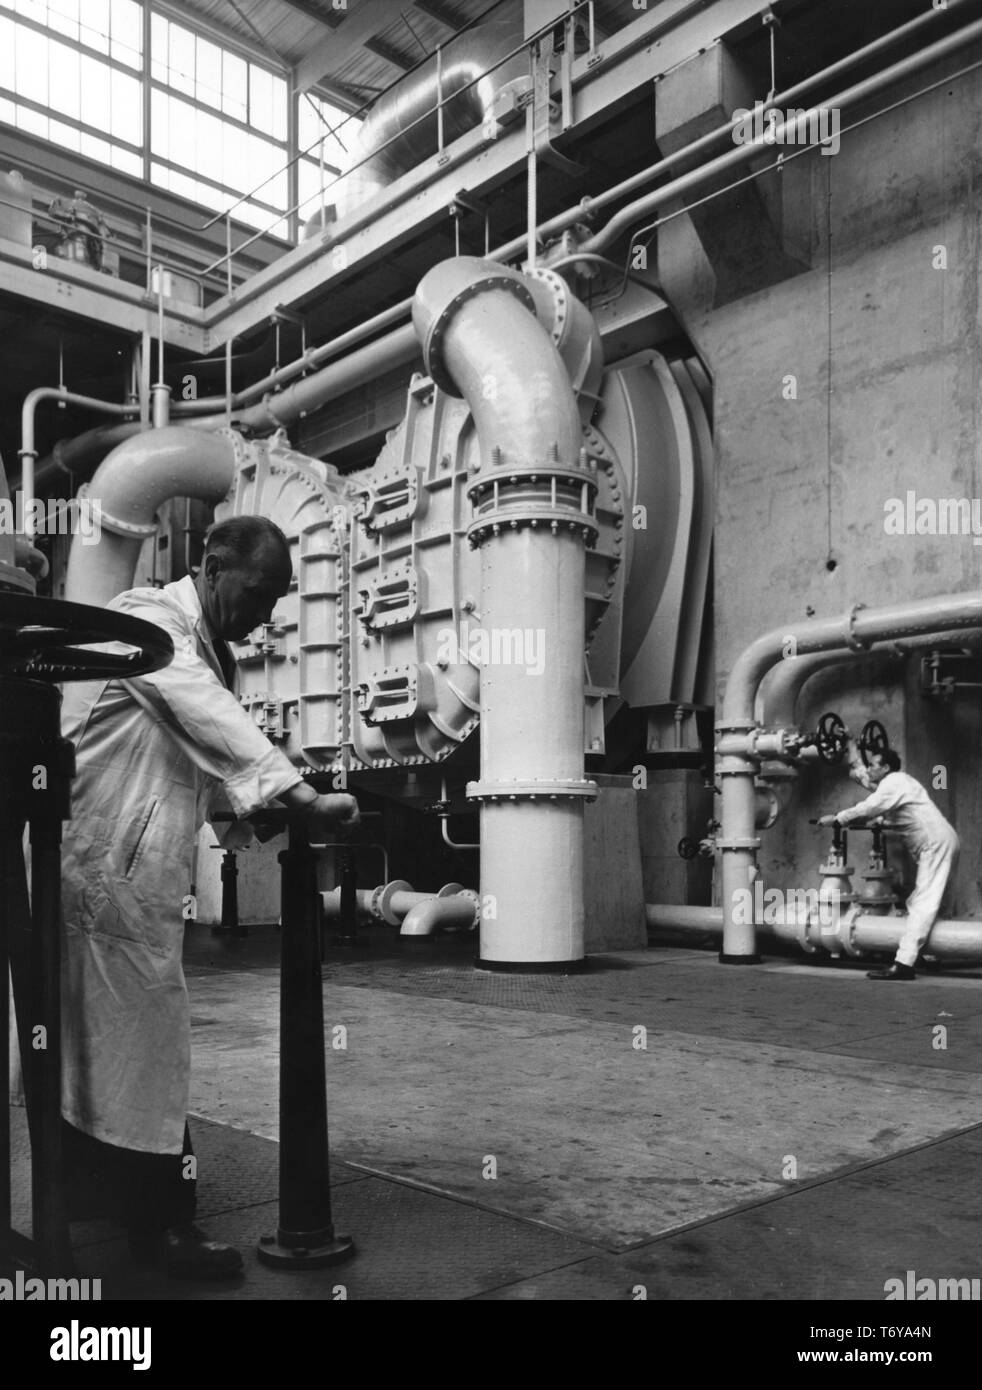 Deux hommes ajuster les contrôles dans le sous-sol de la structure de la salle, avec le turbo alternateur de soutien concret visible à droite, plinthe Calder Hall, la centrale nucléaire de Sellafield, Royaume-Uni, 1956. Image courtoisie du département américain de l'énergie. () Banque D'Images